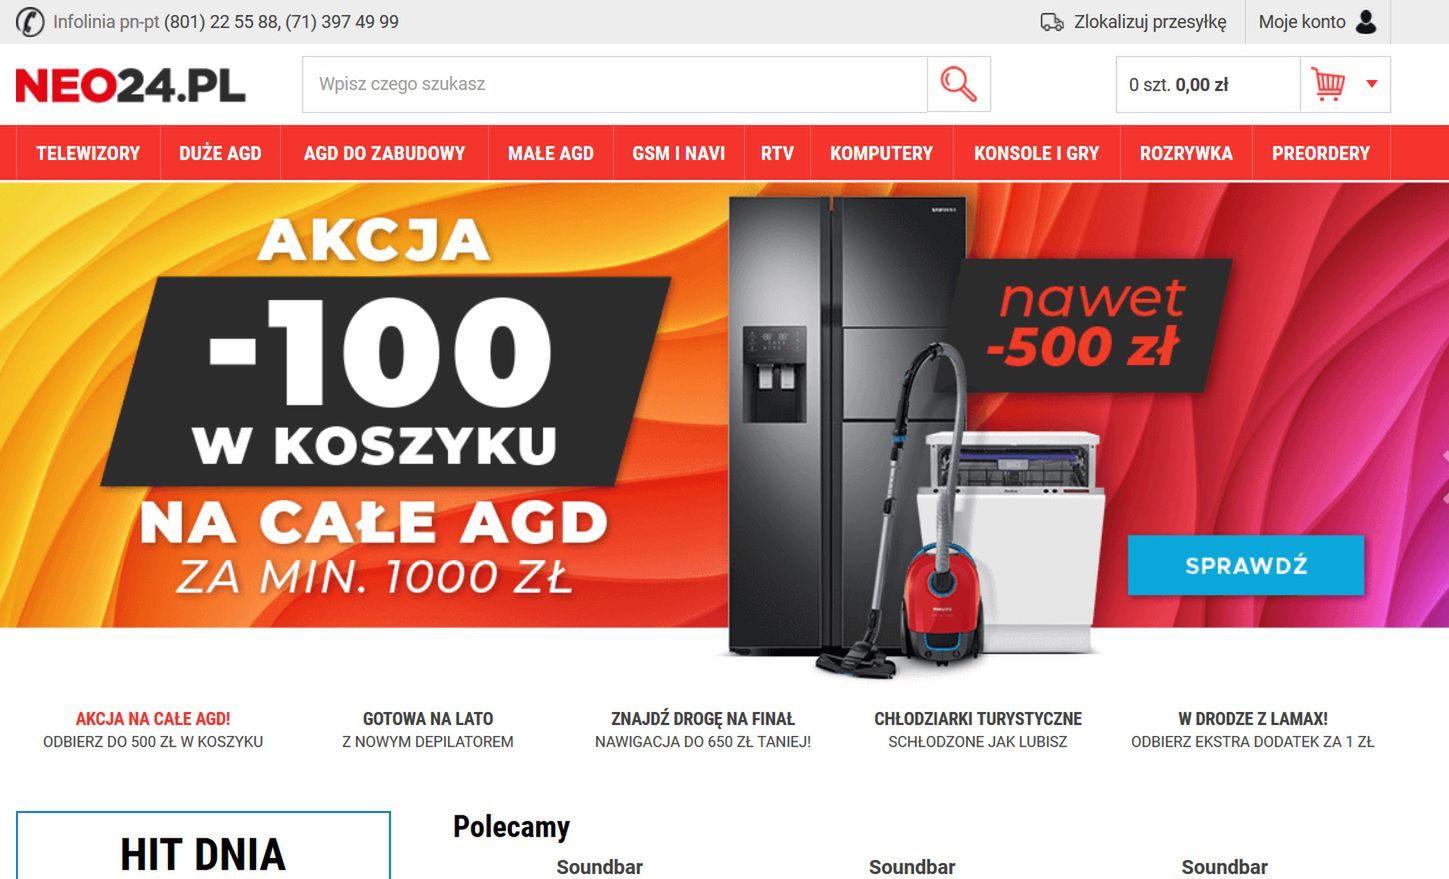 Ofiarą oszustwa padli klienci sklepu neo24.pl